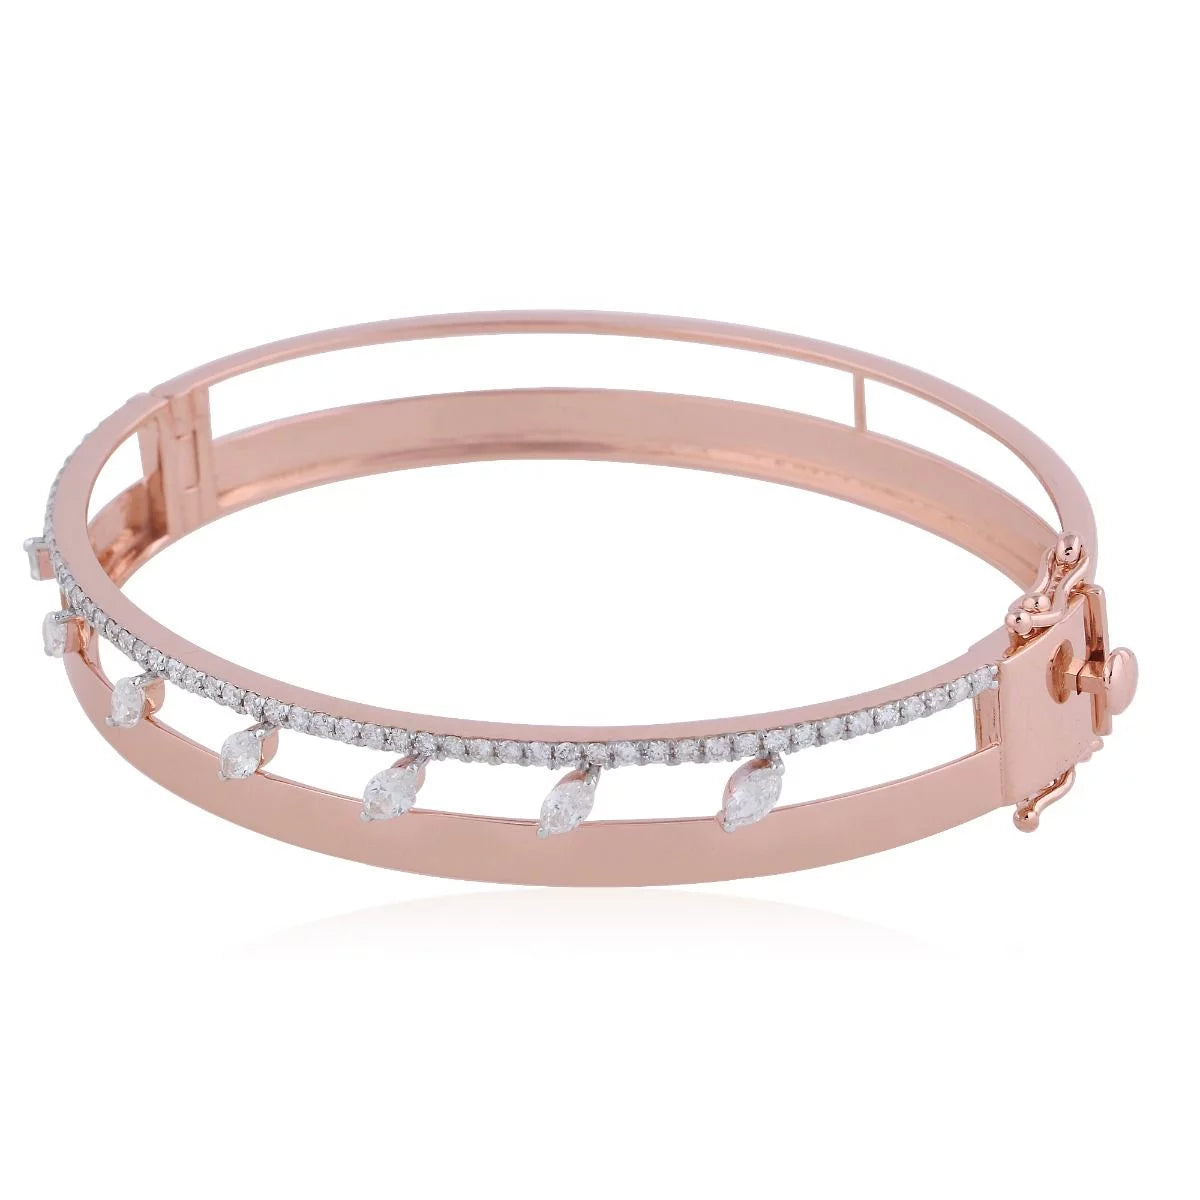 1.3 TCW Solid 18 Kt Rose Gold SI Clarity HI Color Diamond Designer Bangle/Bracelet